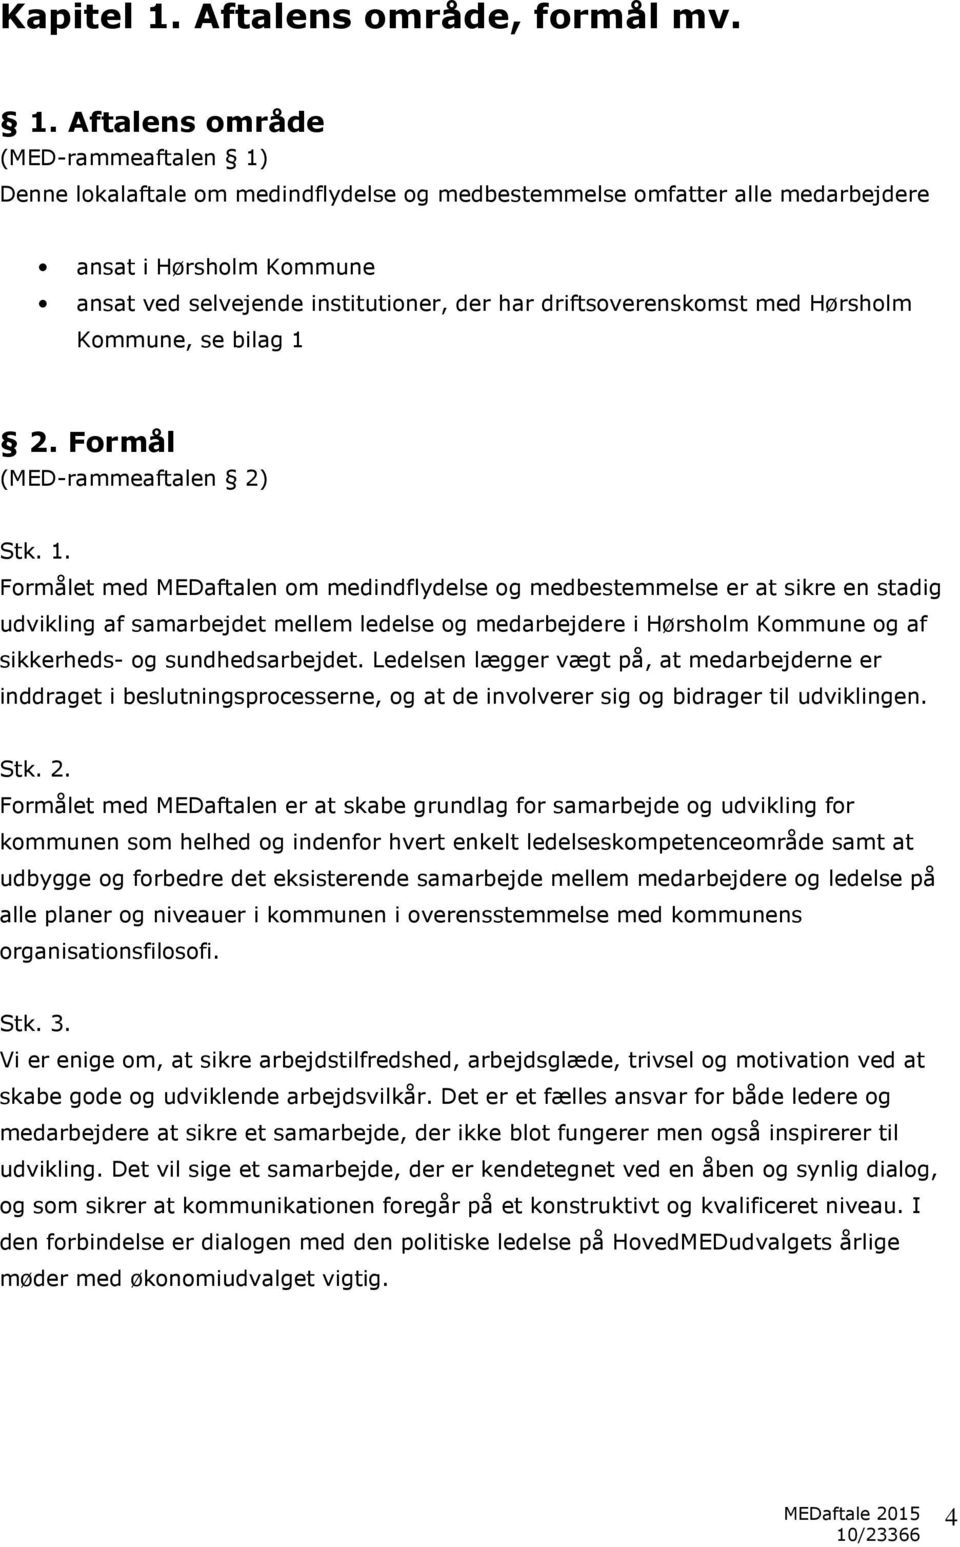 Aftalens område (MED-rammeaftalen 1) Denne lokalaftale om medindflydelse og medbestemmelse omfatter alle medarbejdere ansat i Hørsholm Kommune ansat ved selvejende institutioner, der har